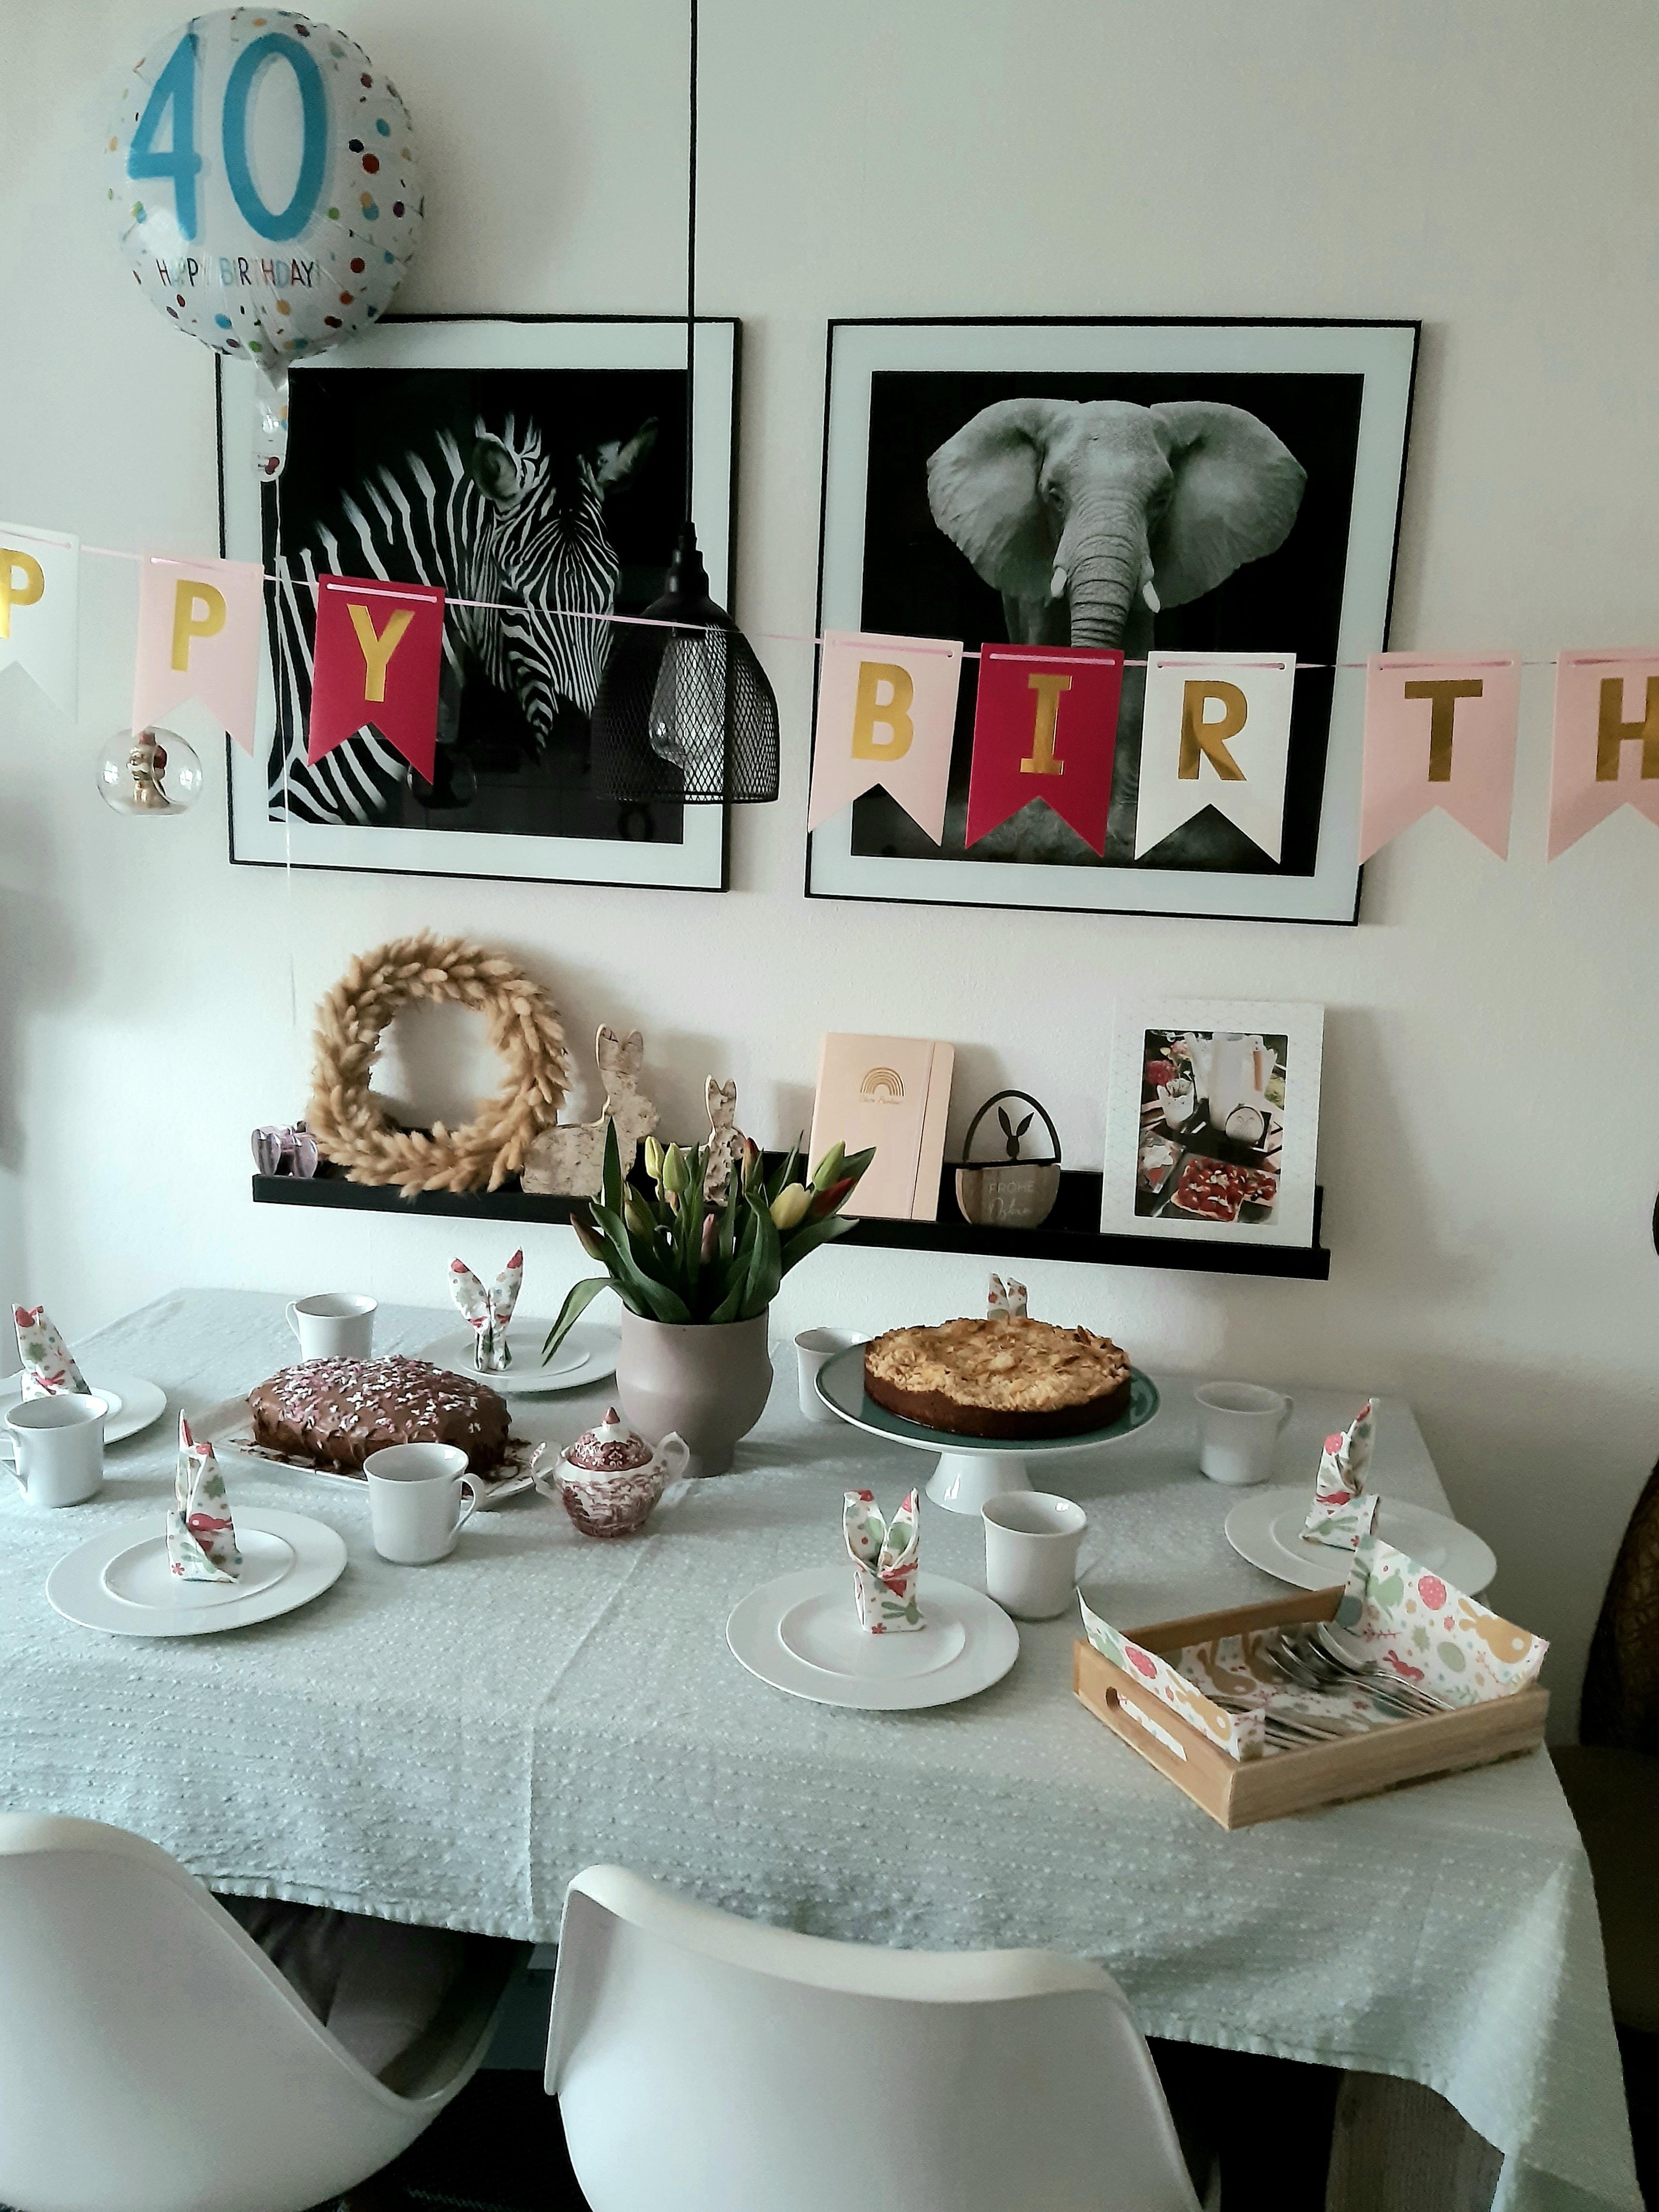 Mein Tisch zur Geburtstagsfeier 🥳

#happybirthday #tischdeko #feier #luftballon #girlande #blumen #kuchen #esstisch